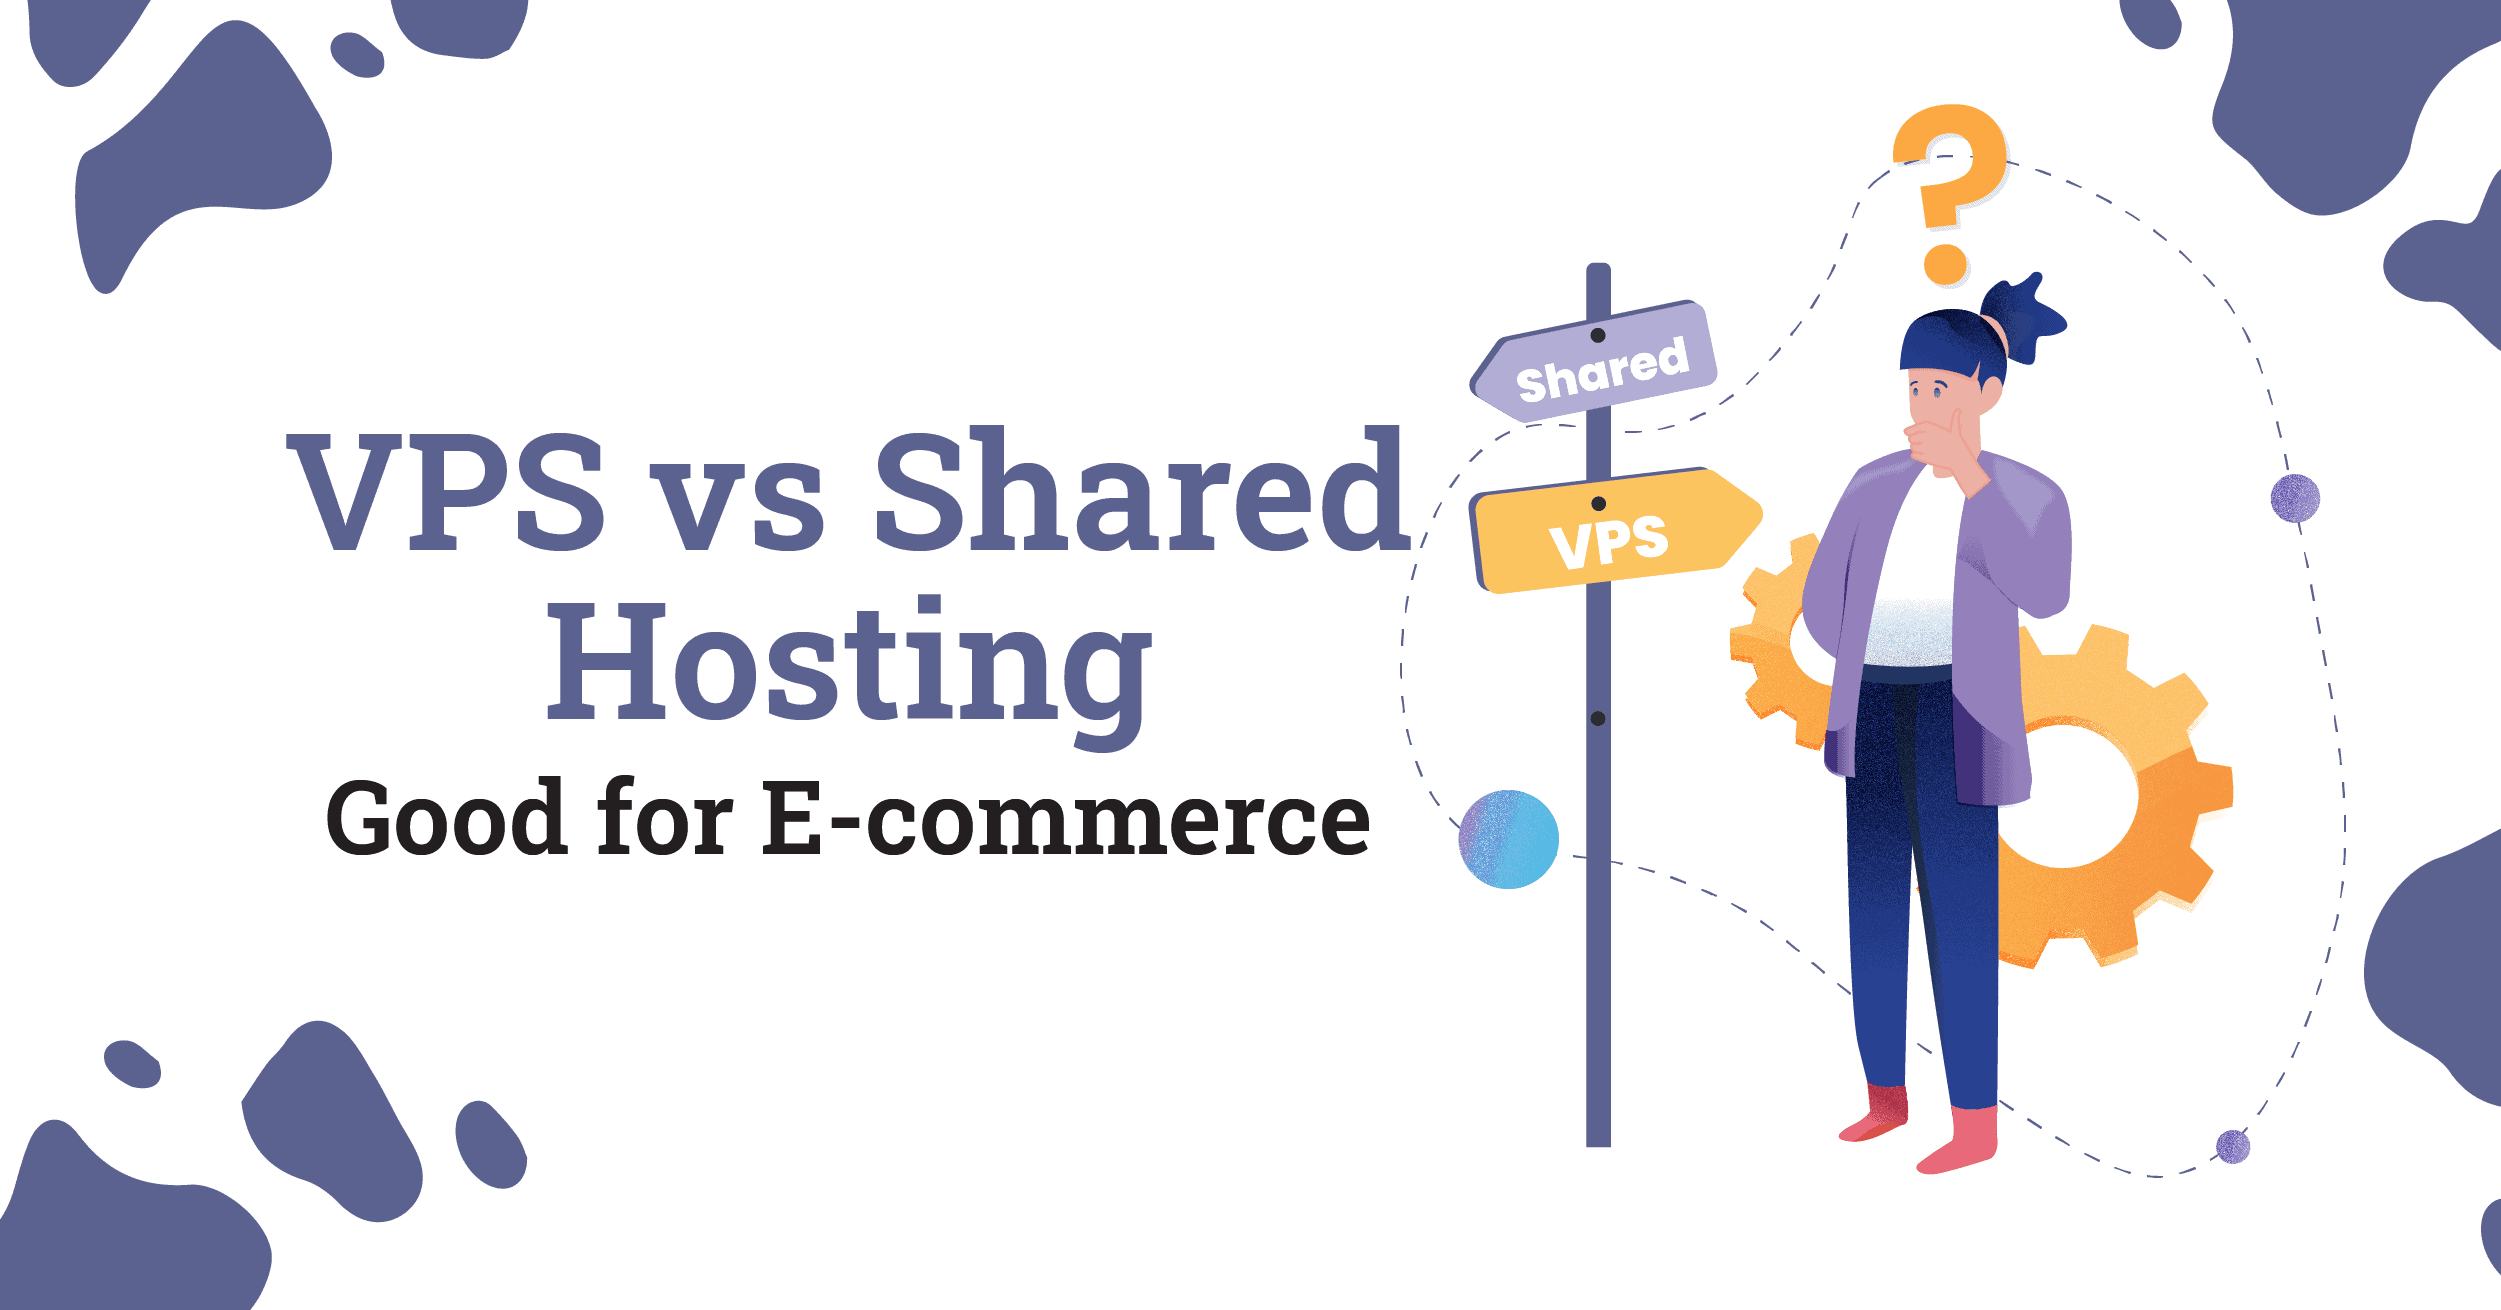 VPS vs shared hosting good for ecommerce